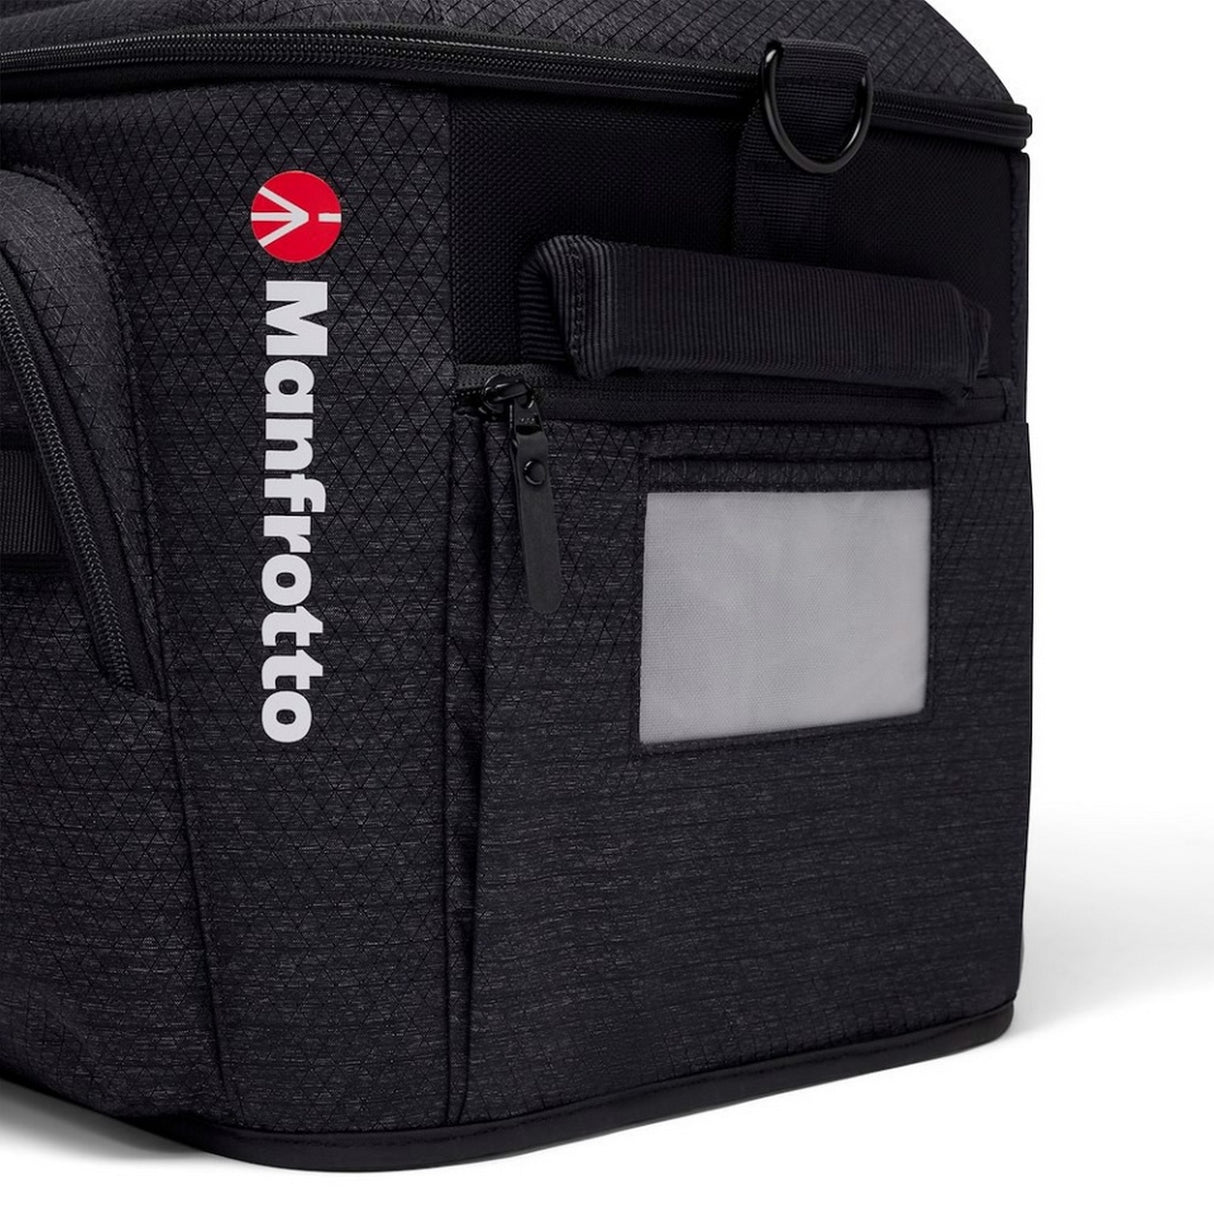 Manfrotto MB PL-CL-L Pro Light Cineloader Bag, Large